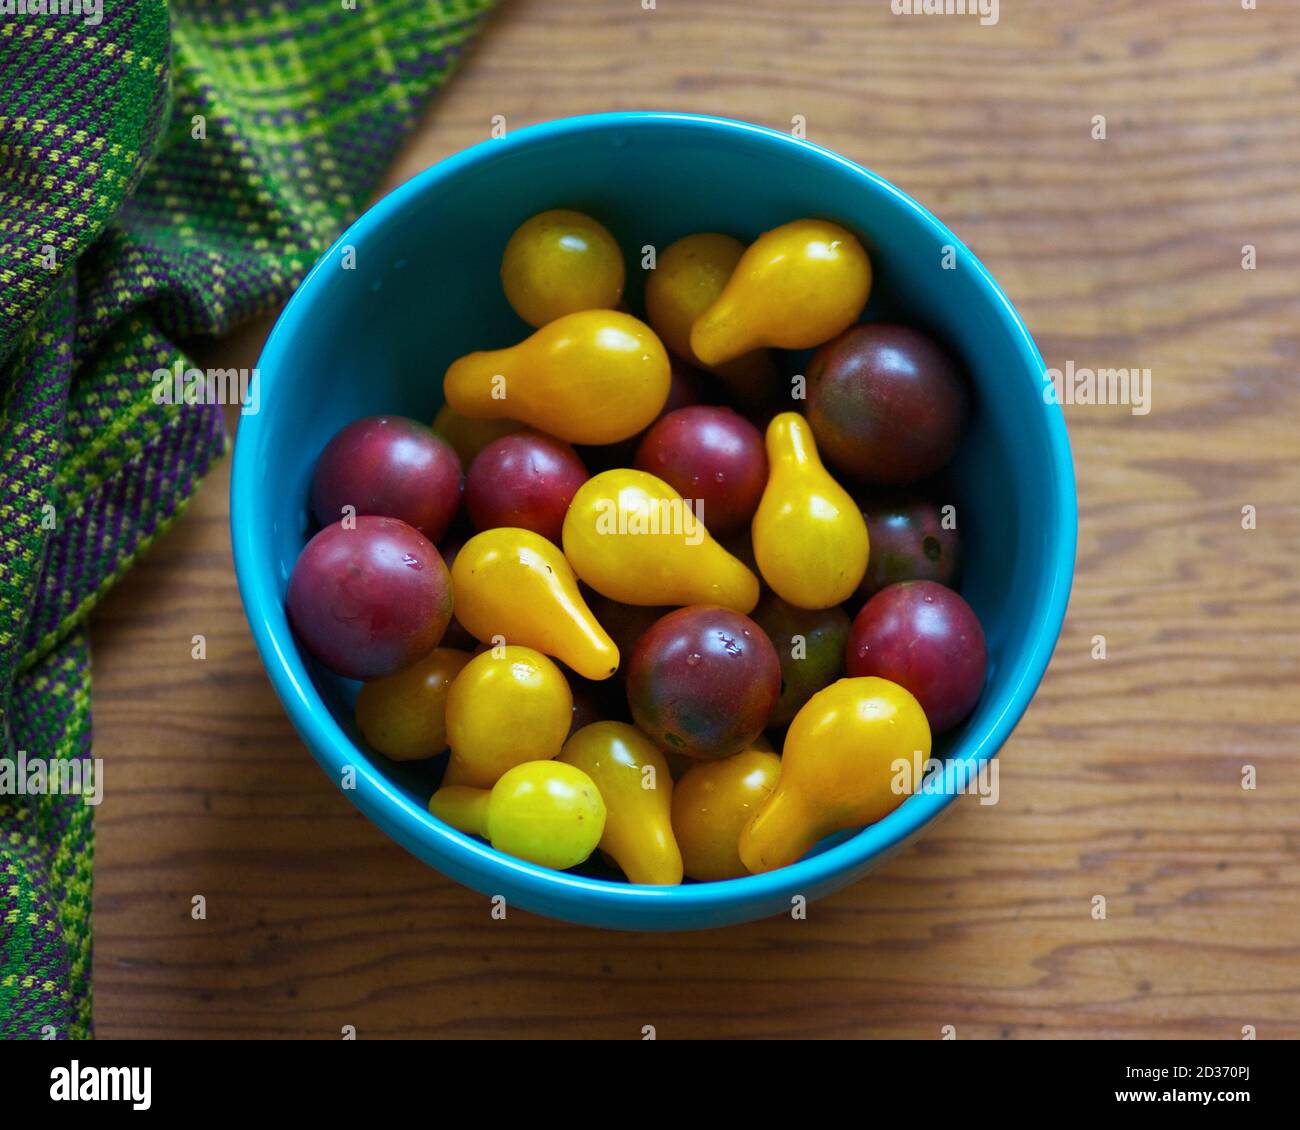 Bowl of fresh yellow and purple cherry tomatoes. Stock Photo